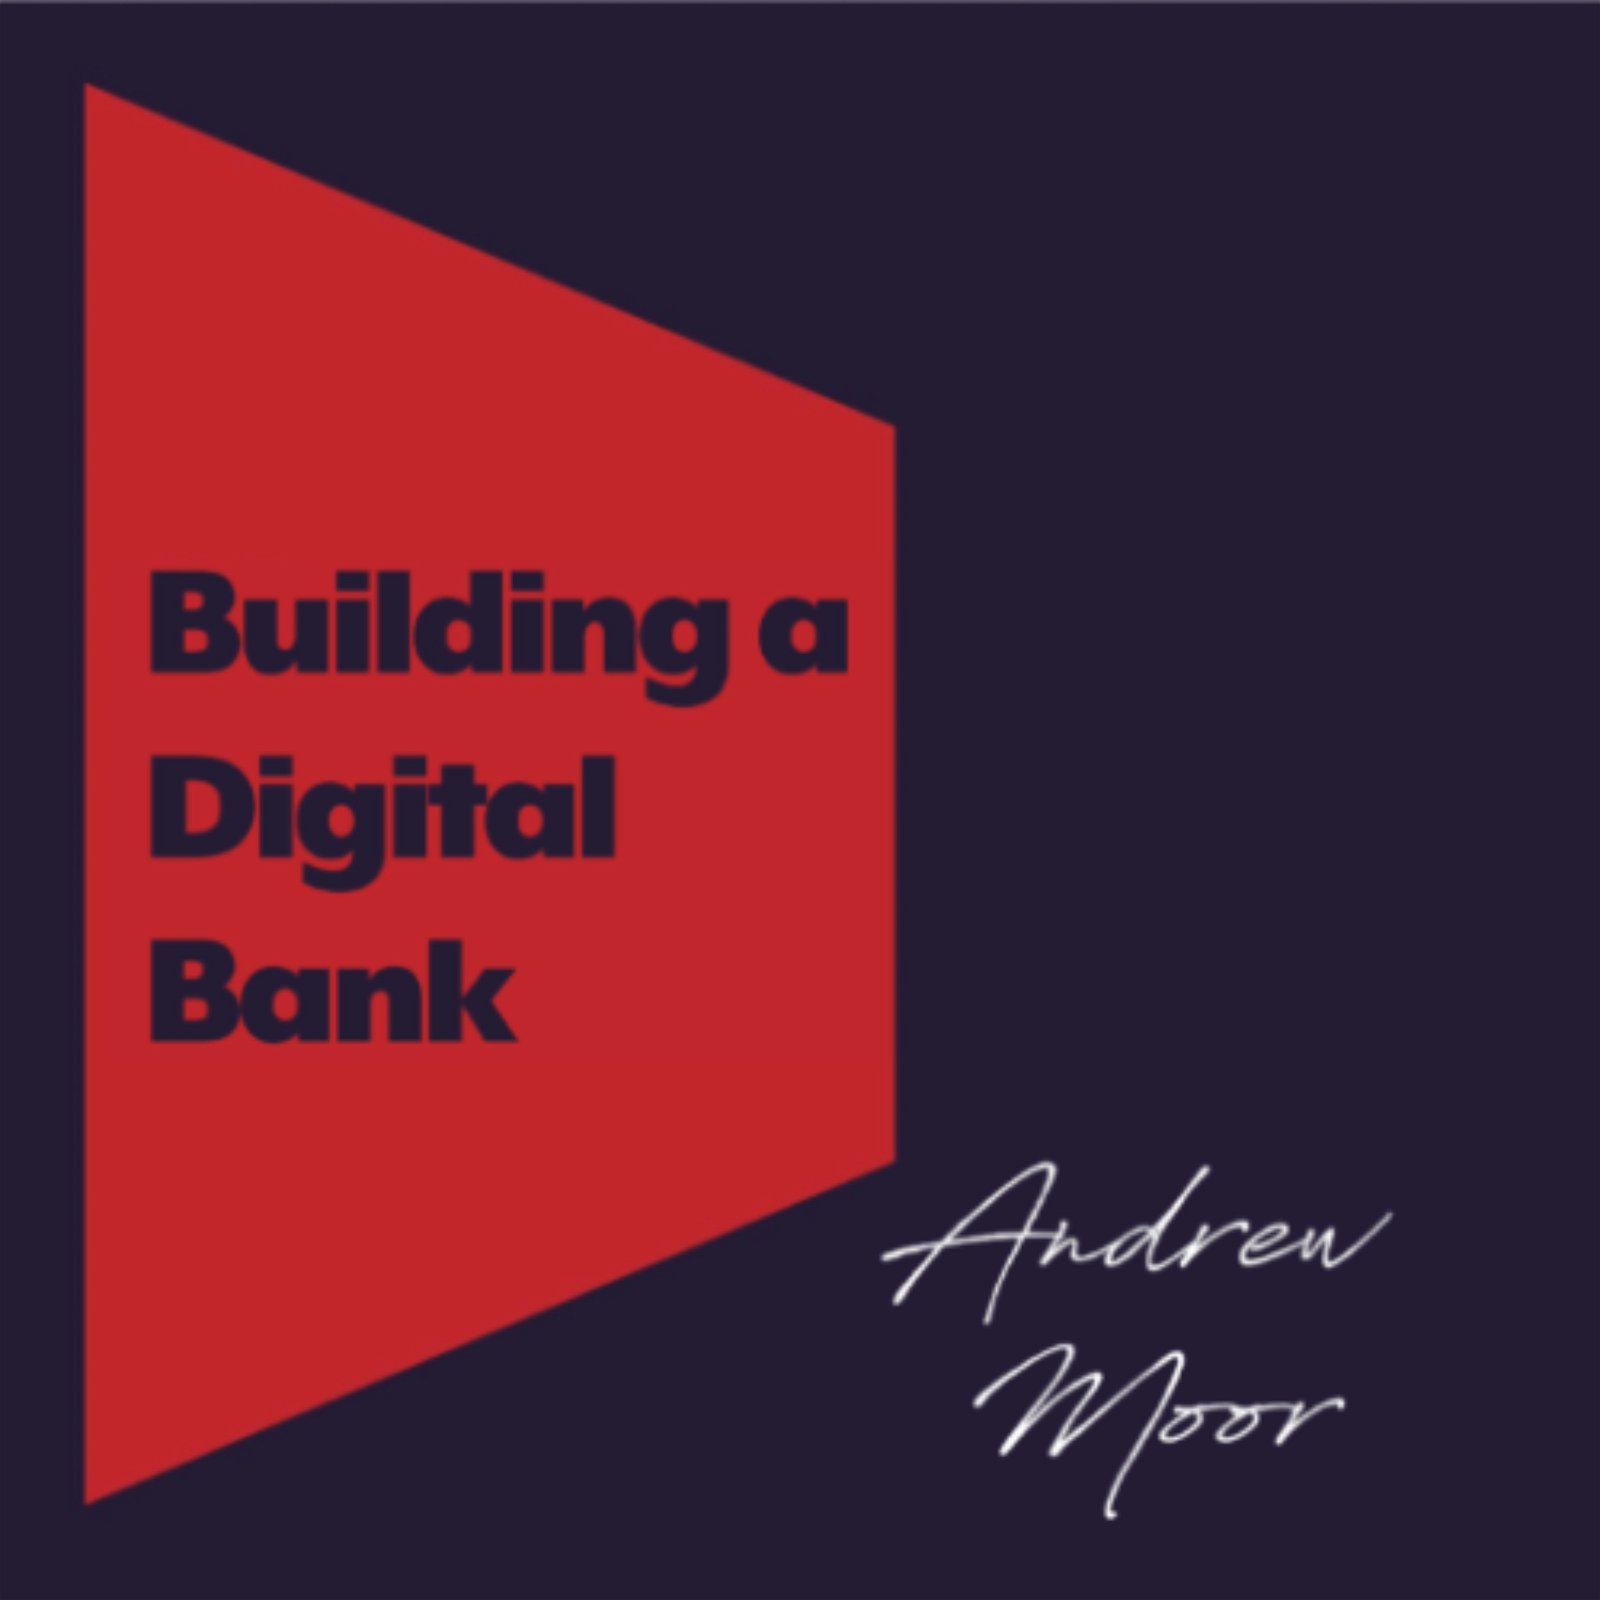 Building a Digital Bank